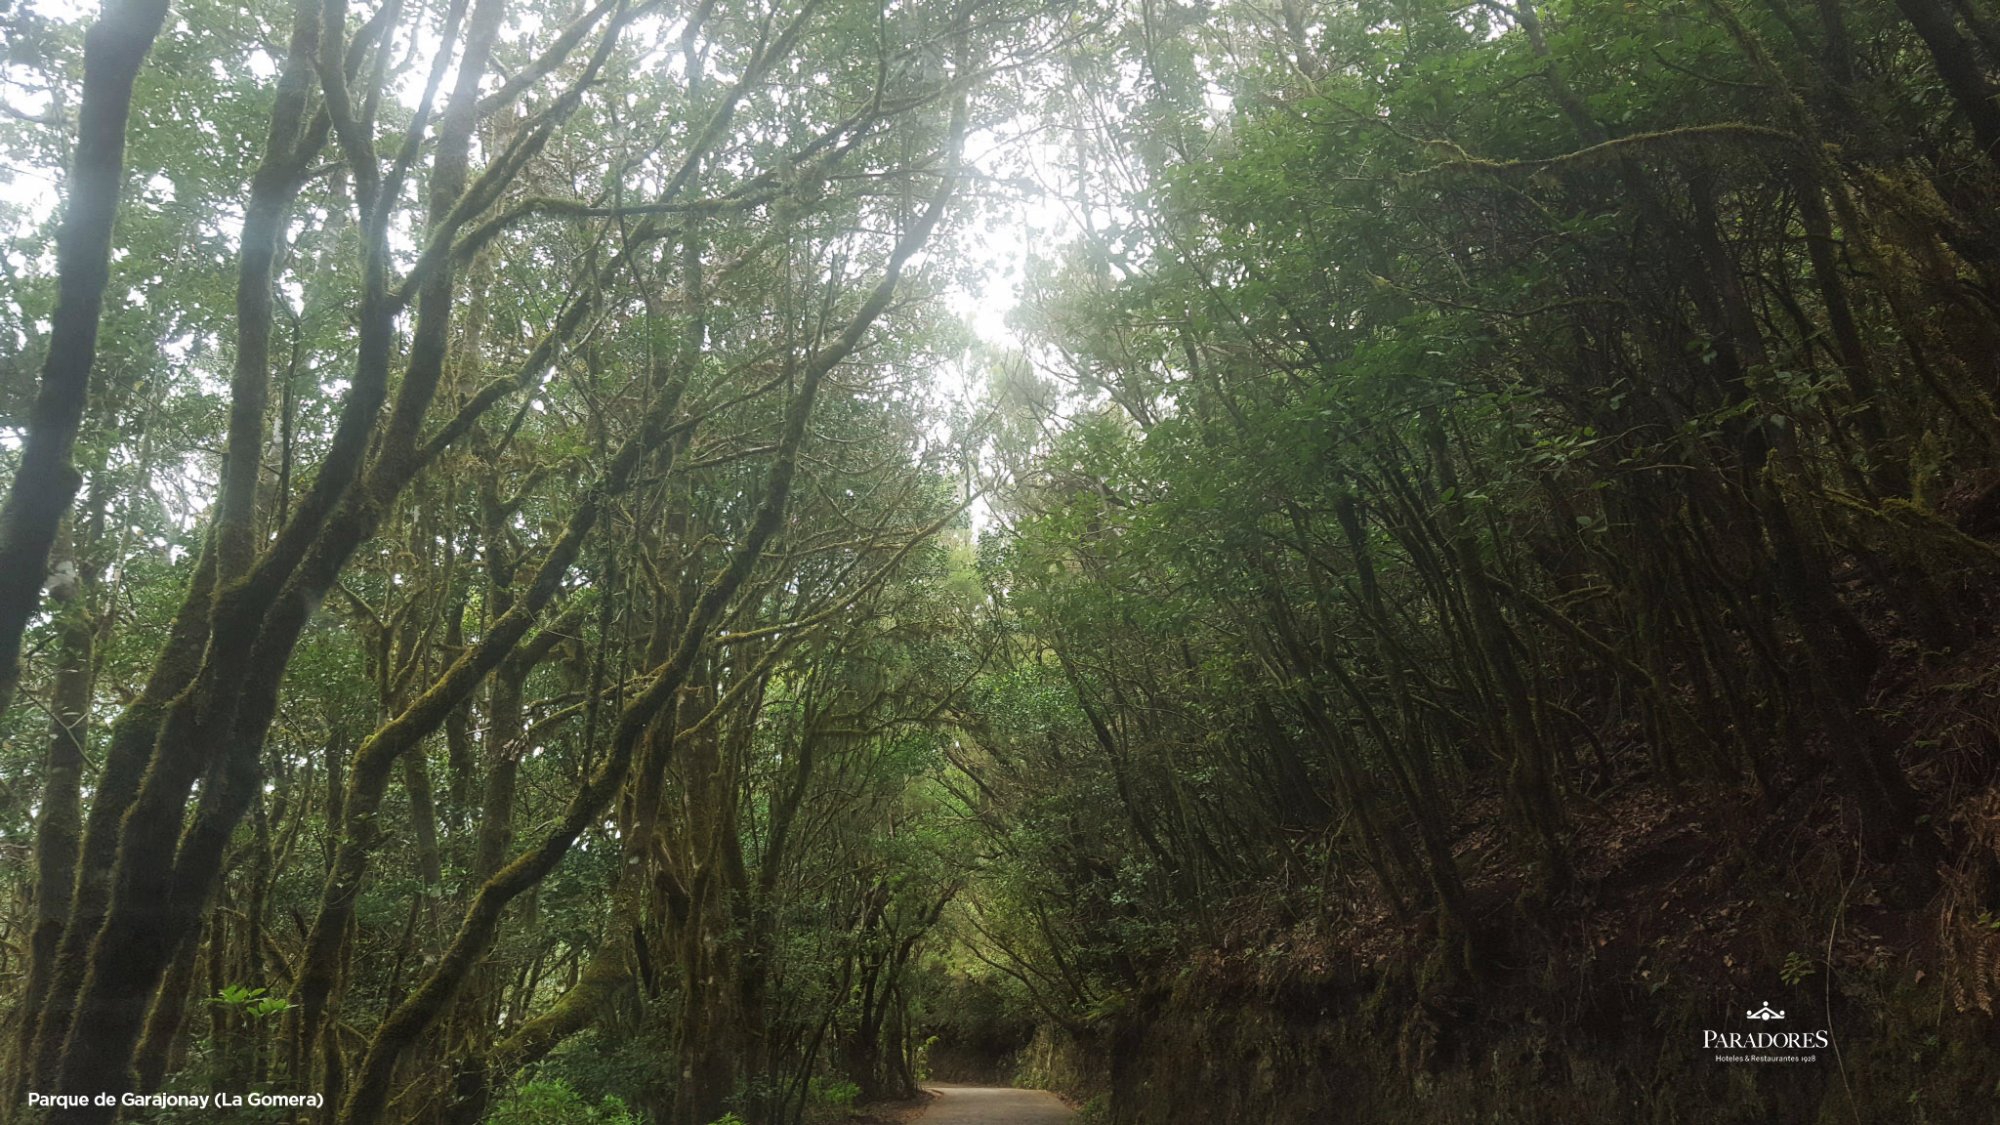 Parque de Garajonay La Gomera